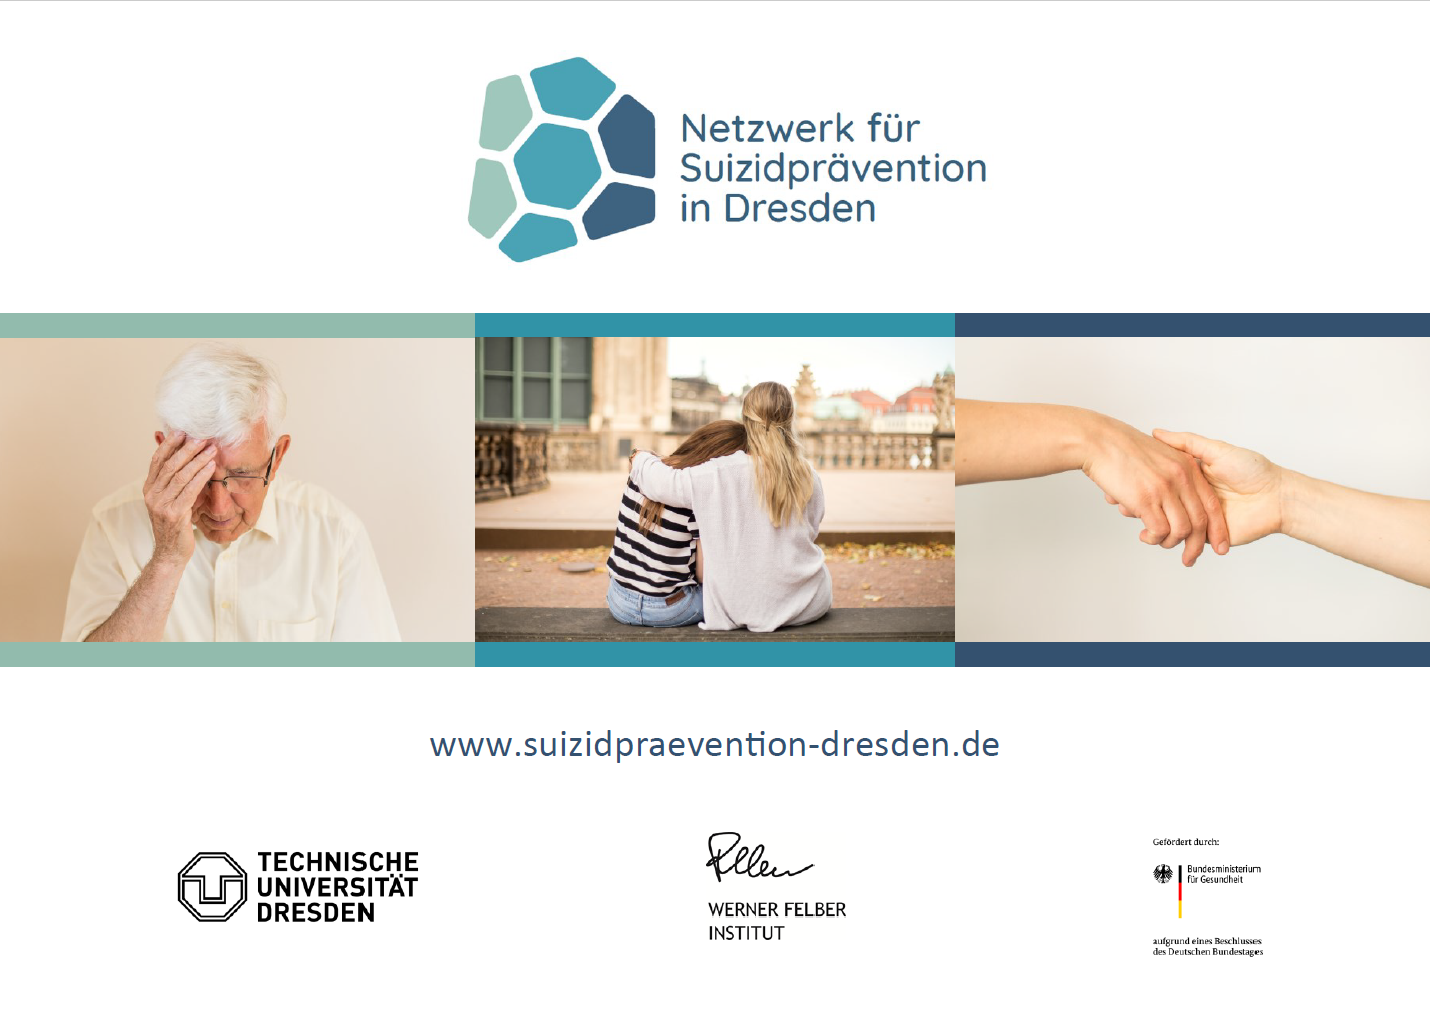 Web-basiertes Informationsportal zur Suizidprävention in Dresden ist online